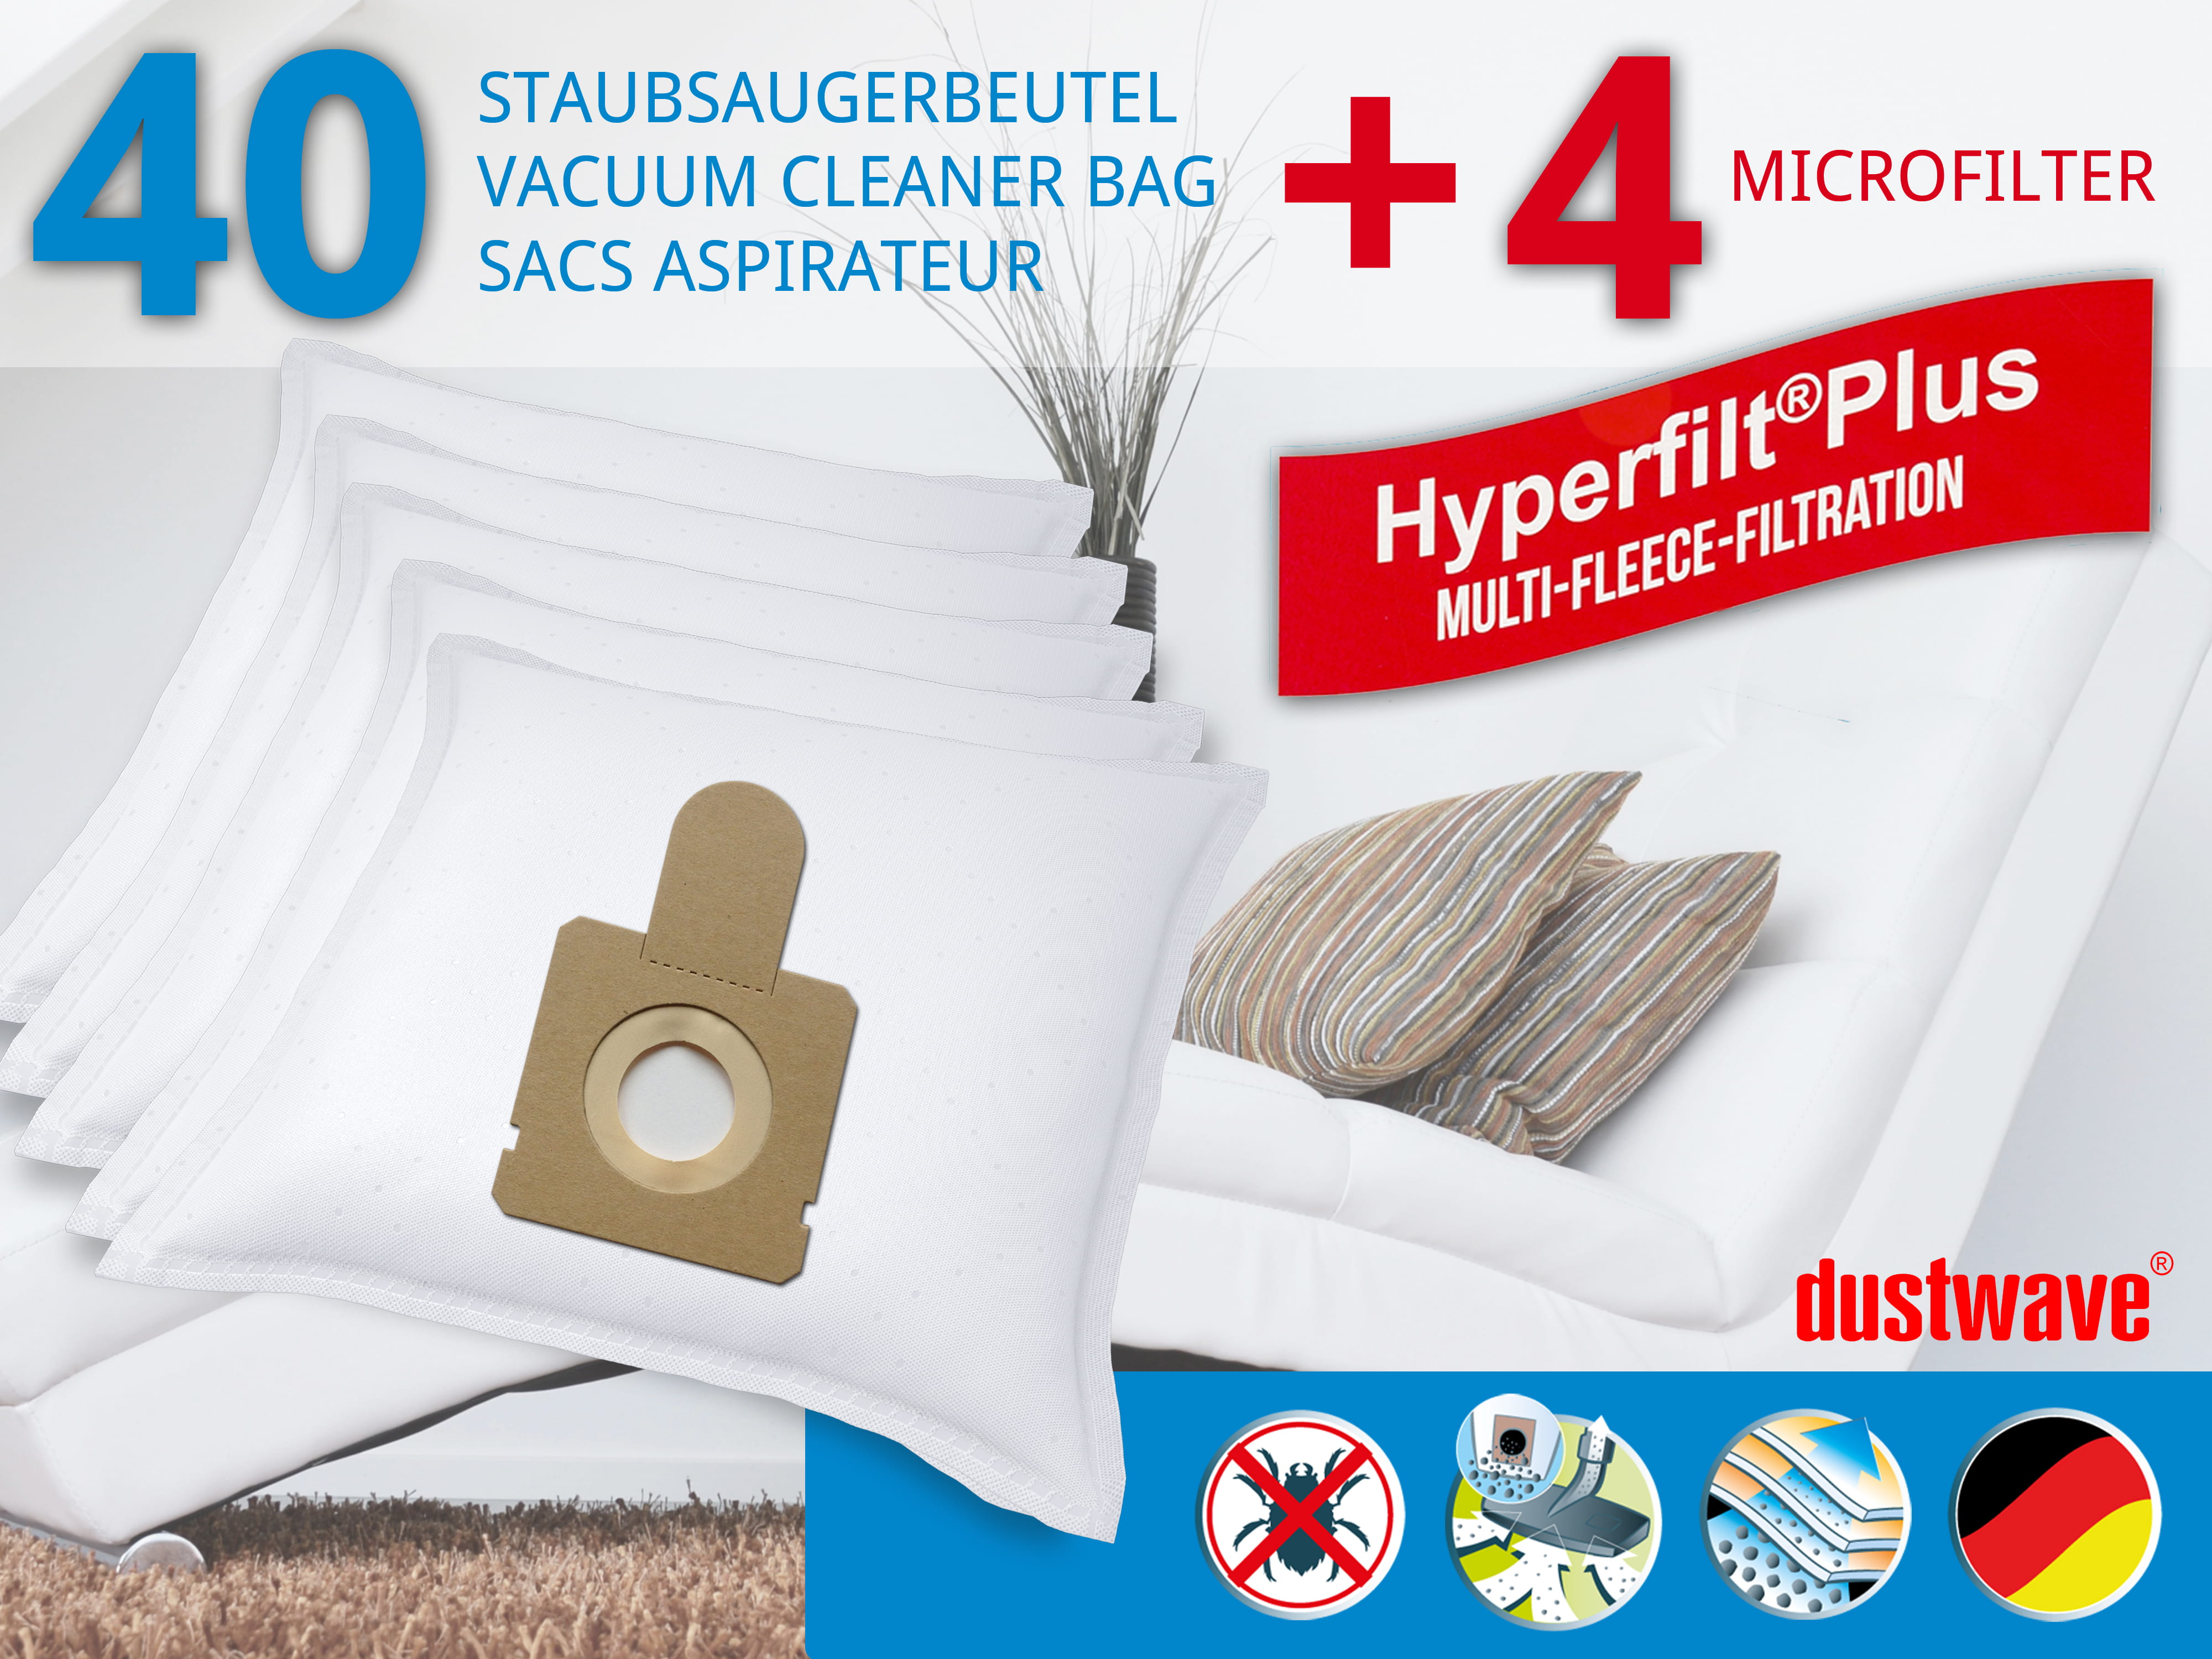 Dustwave® 40 Staubsaugerbeutel für Blue Sky TI 1400 / TI1400 - hocheffizient, mehrlagiges Mikrovlies mit Hygieneverschluss - Made in Germany